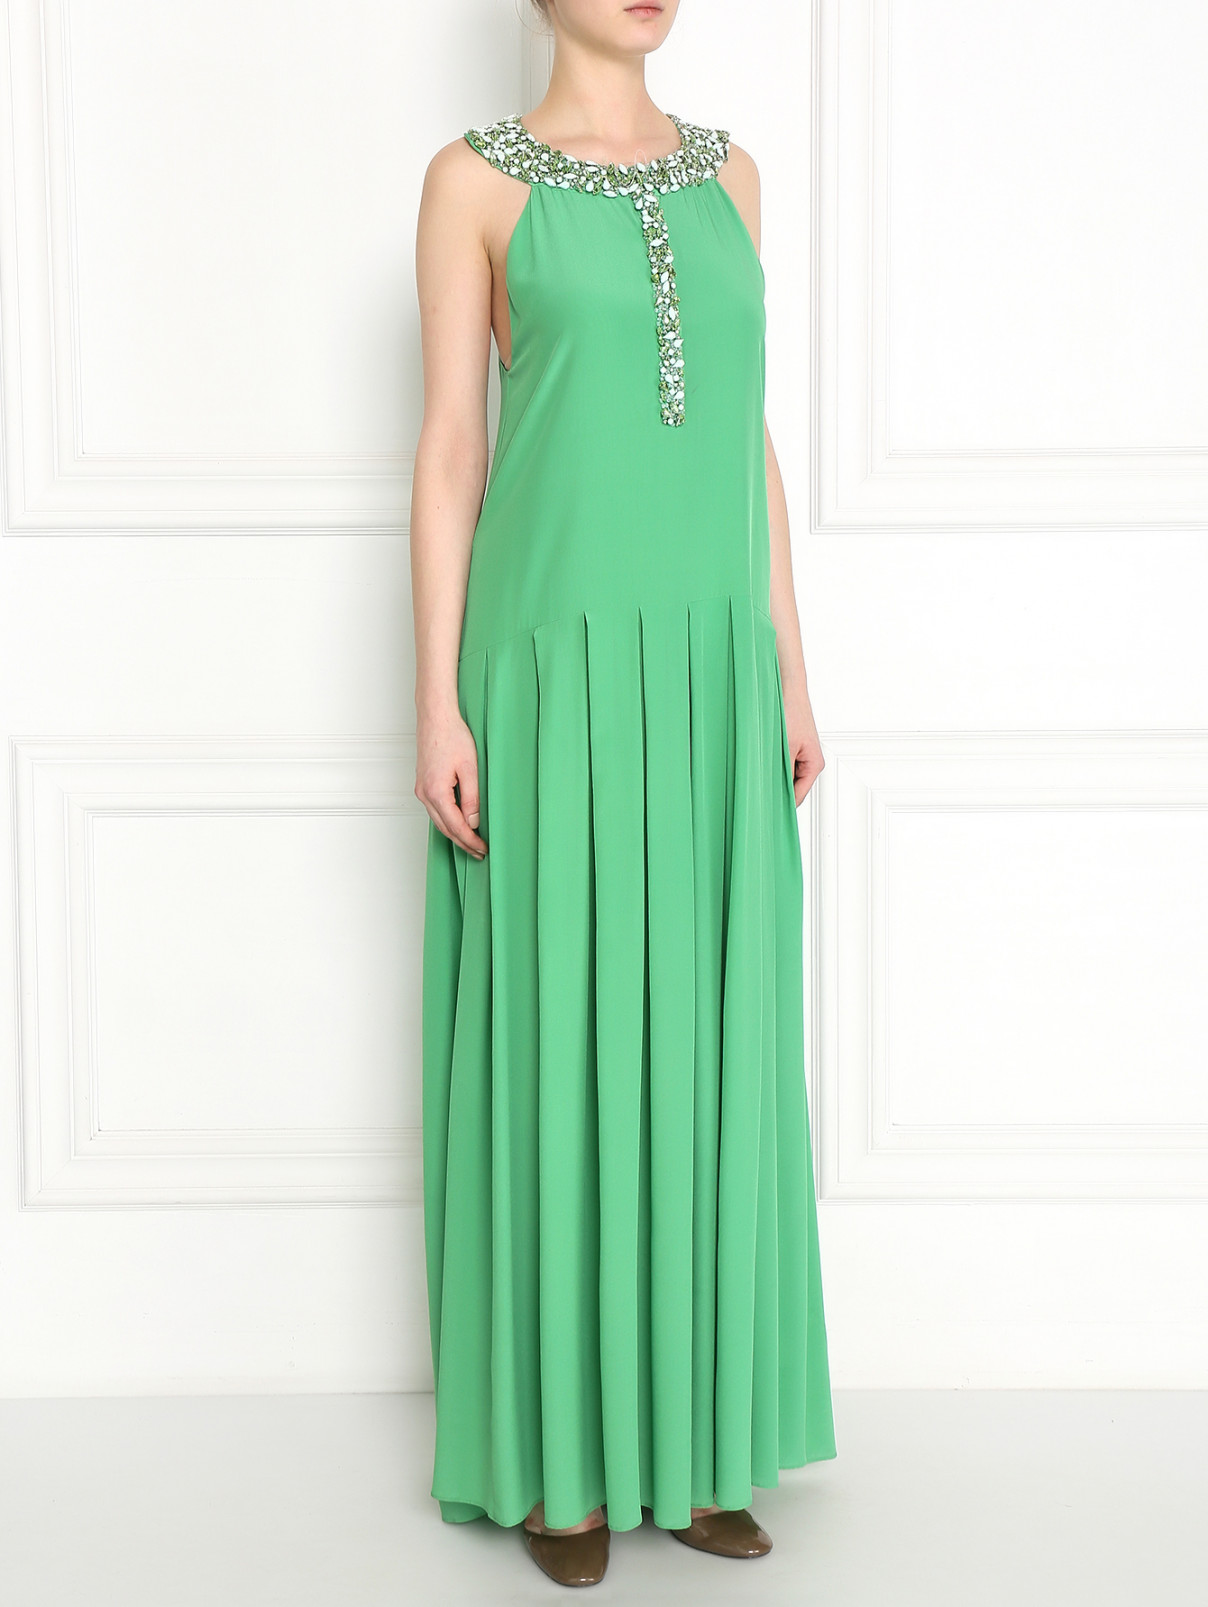 Платье-макси из шелка, декорированное кристаллами Ermanno Scervino  –  Модель Общий вид  – Цвет:  Зеленый